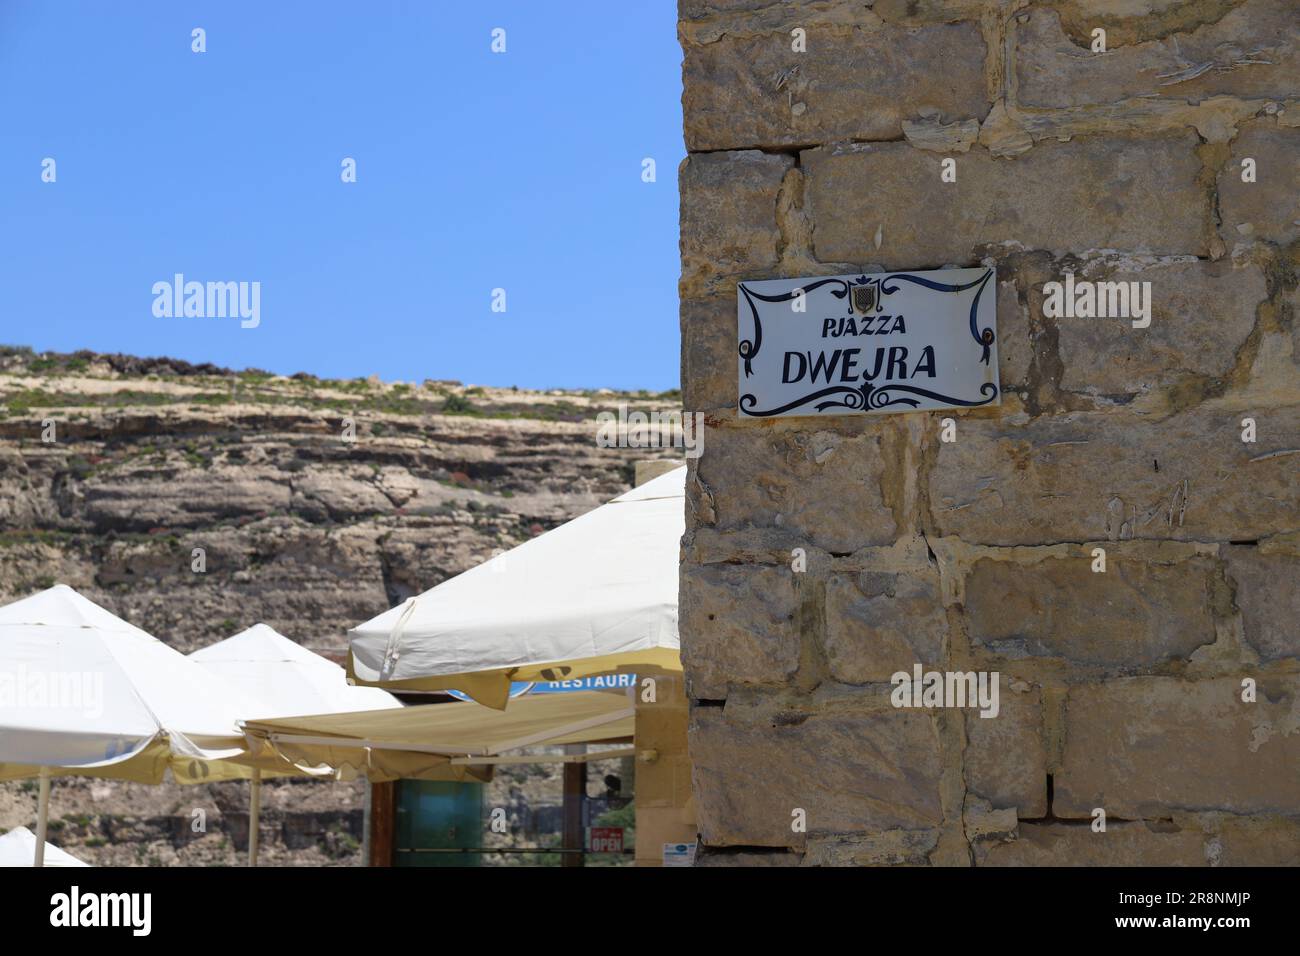 Isola di Malta - molti posti Foto Stock